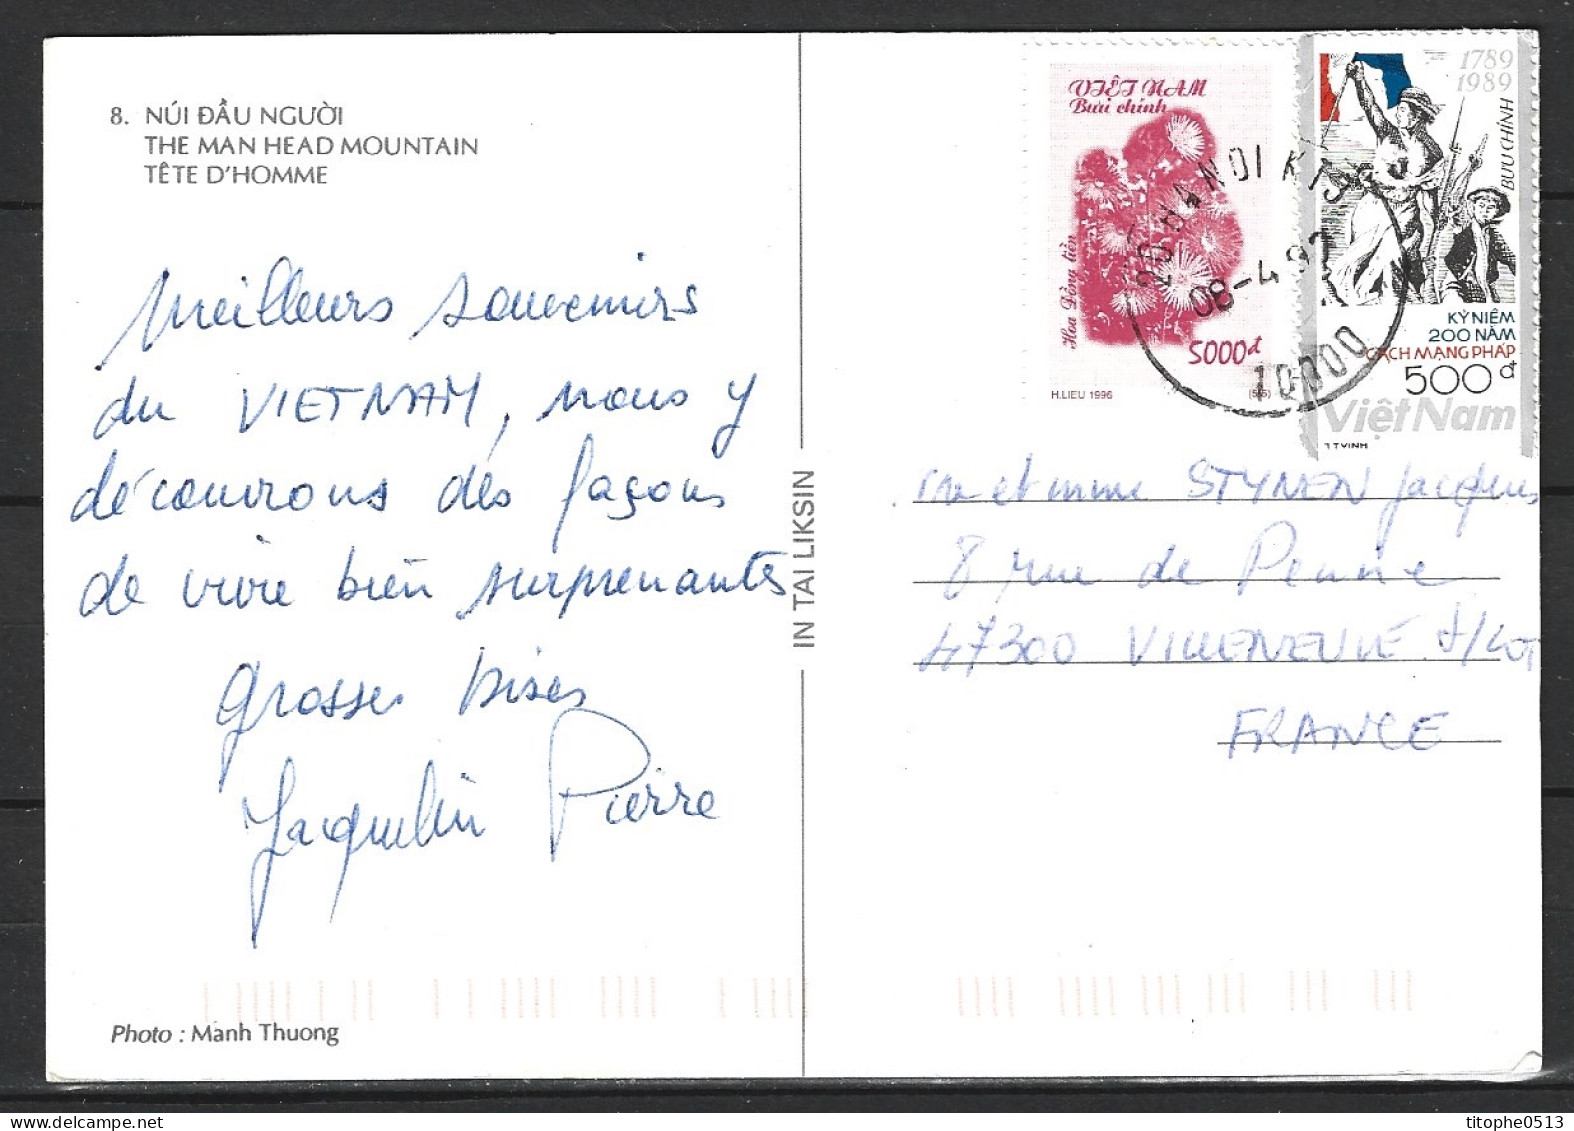 VIETNAM. N°988 De 1989 Sur Carte Postale Ayant Circulé. Liberté Guidant Le Peuple. - French Revolution